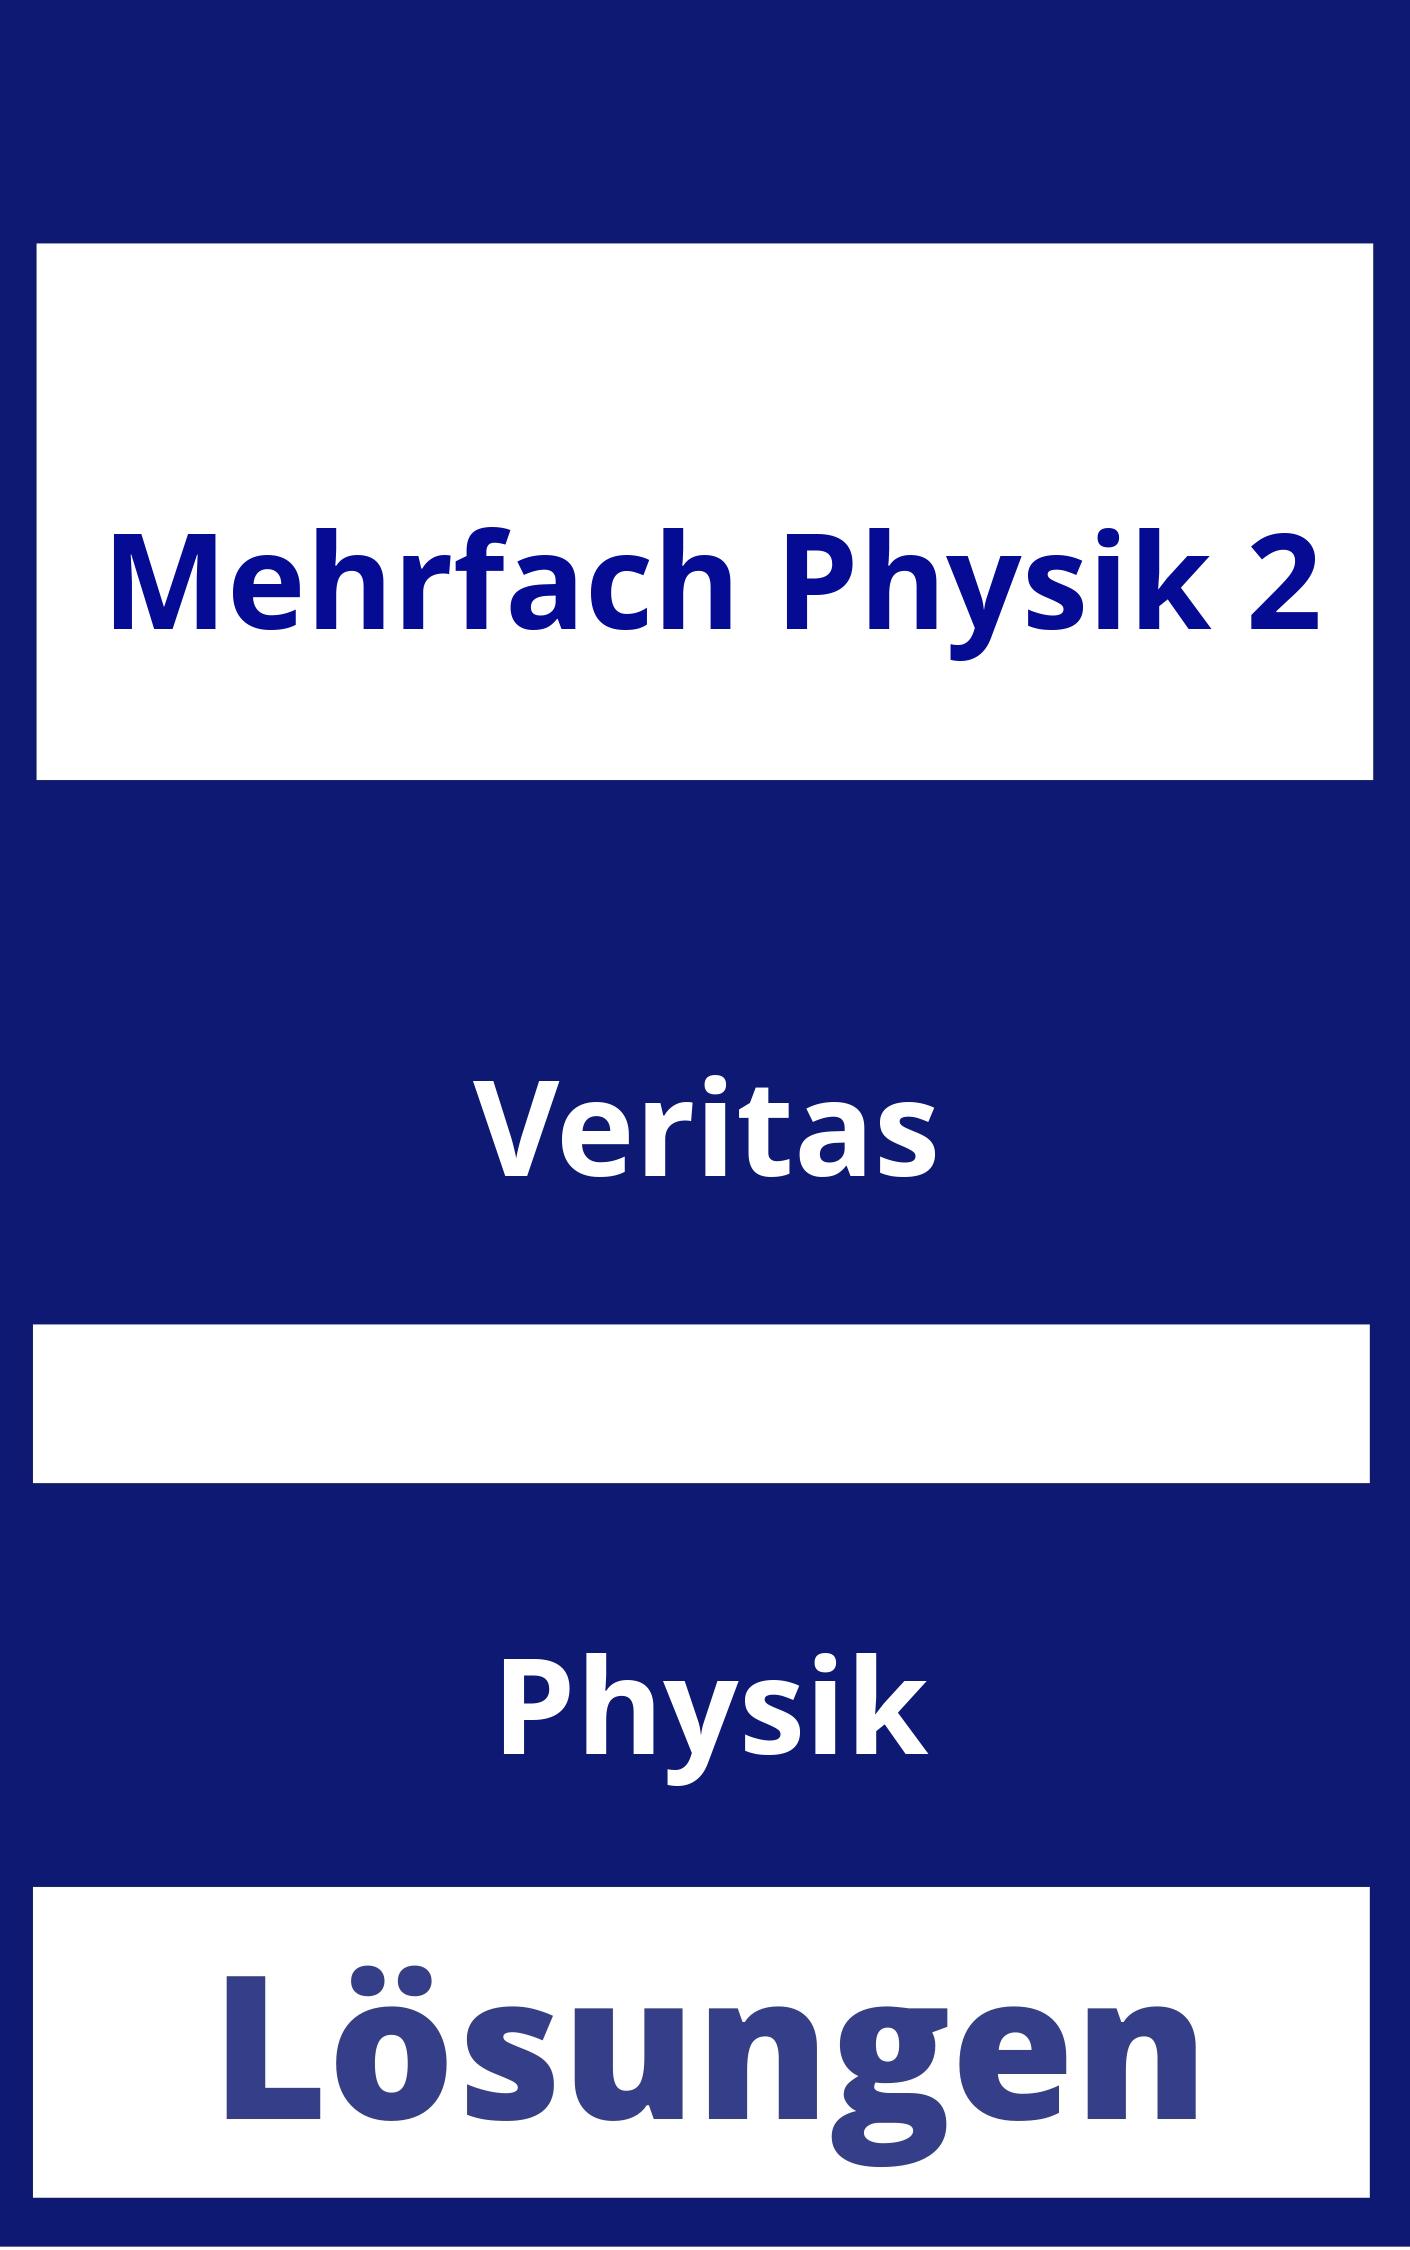 MEHRfach Physik 2 Lösungen PDF